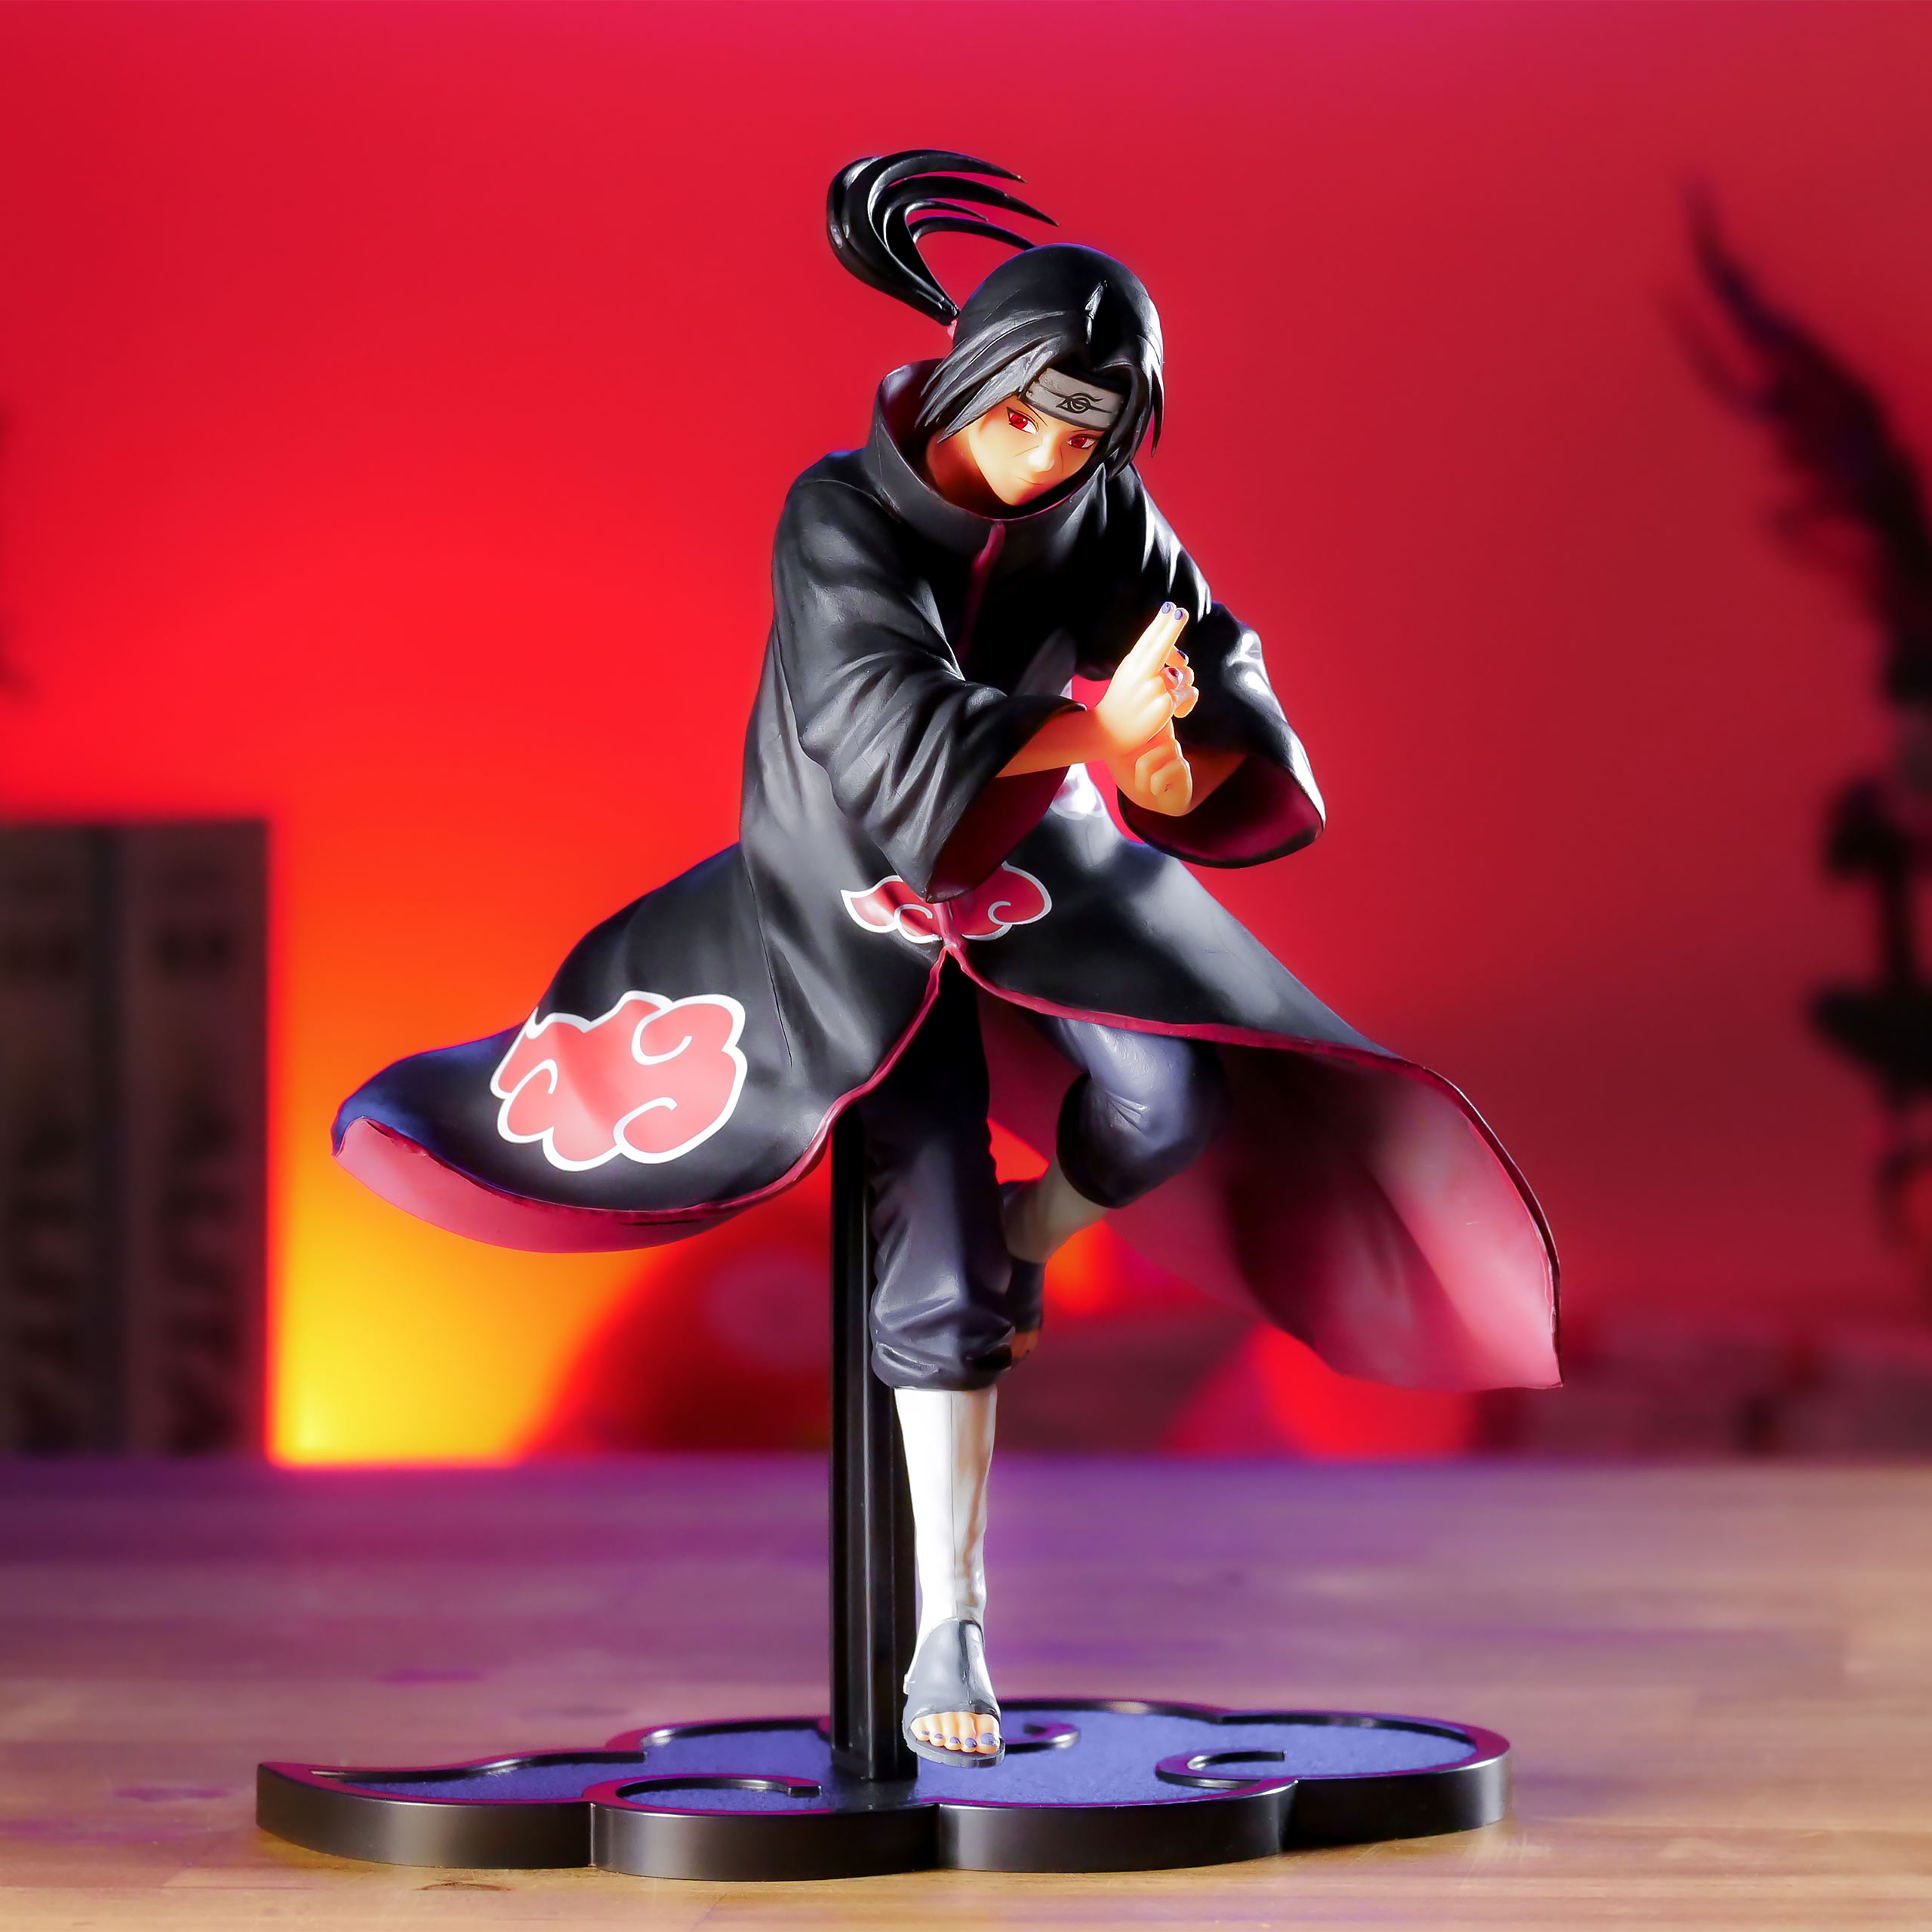 Naruto Shippuden - Itachi Figur